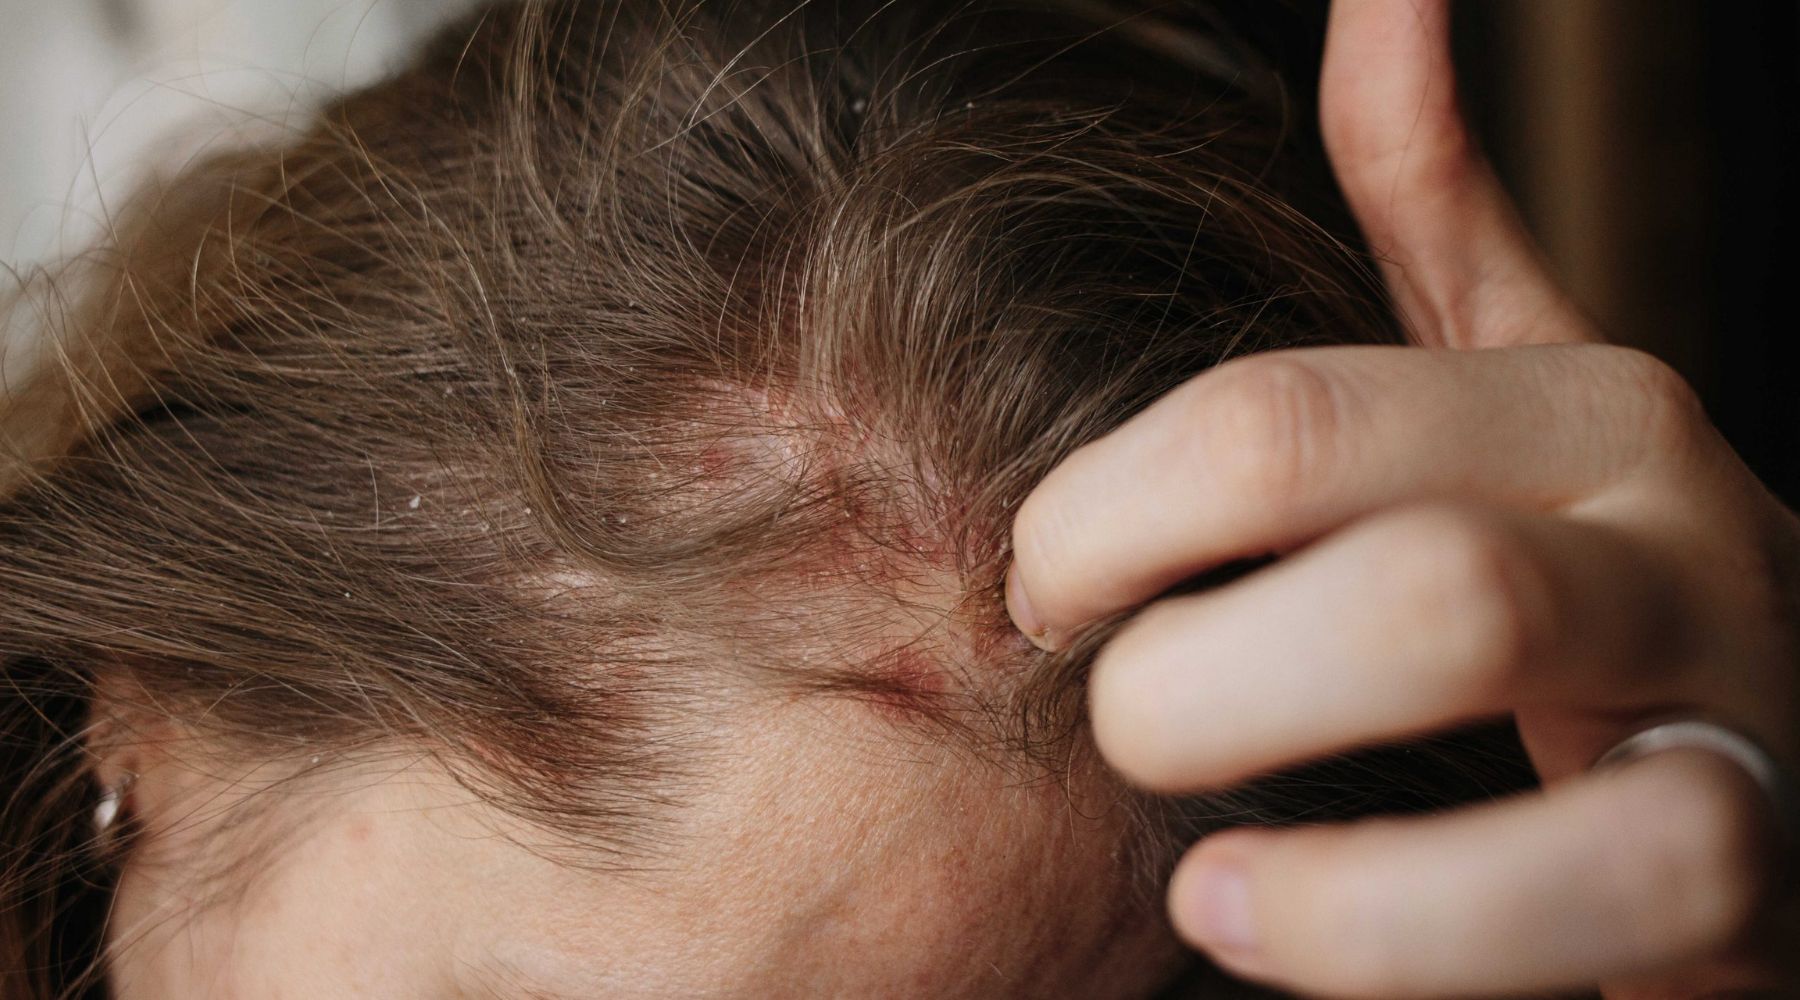 أعراض اصابتك بـ إلتهاب فروة الرأس، وهل هي سبب تساقط الشعر؟!